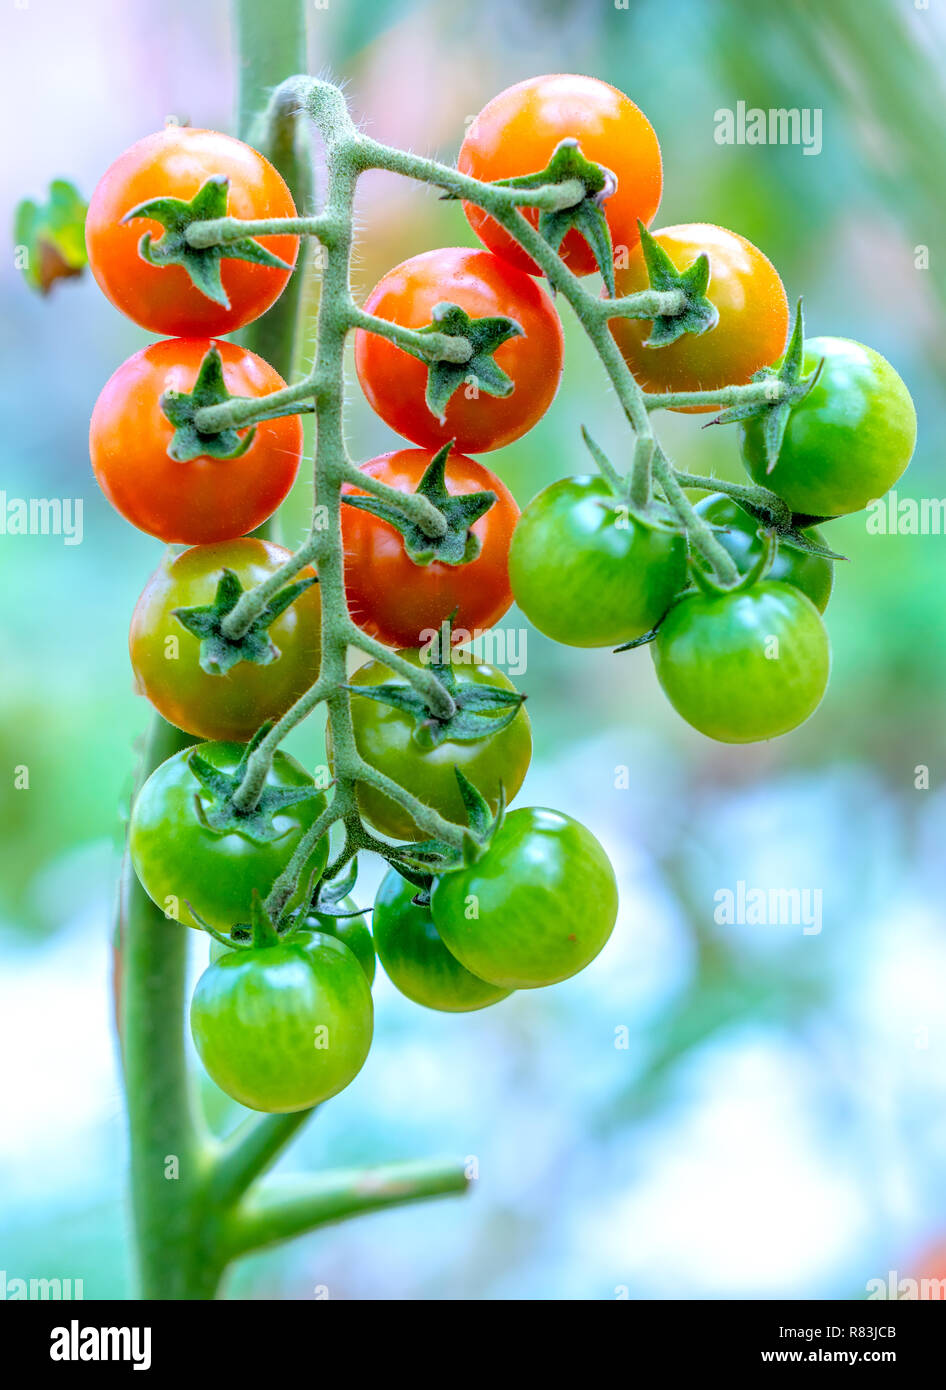 Reife Tomaten in einem Gewächshaus, reif für die Ernte. Sie sind japanische Sorten von Tomate im kalten Land von Dalat Vietnam gewachsen. Stockfoto